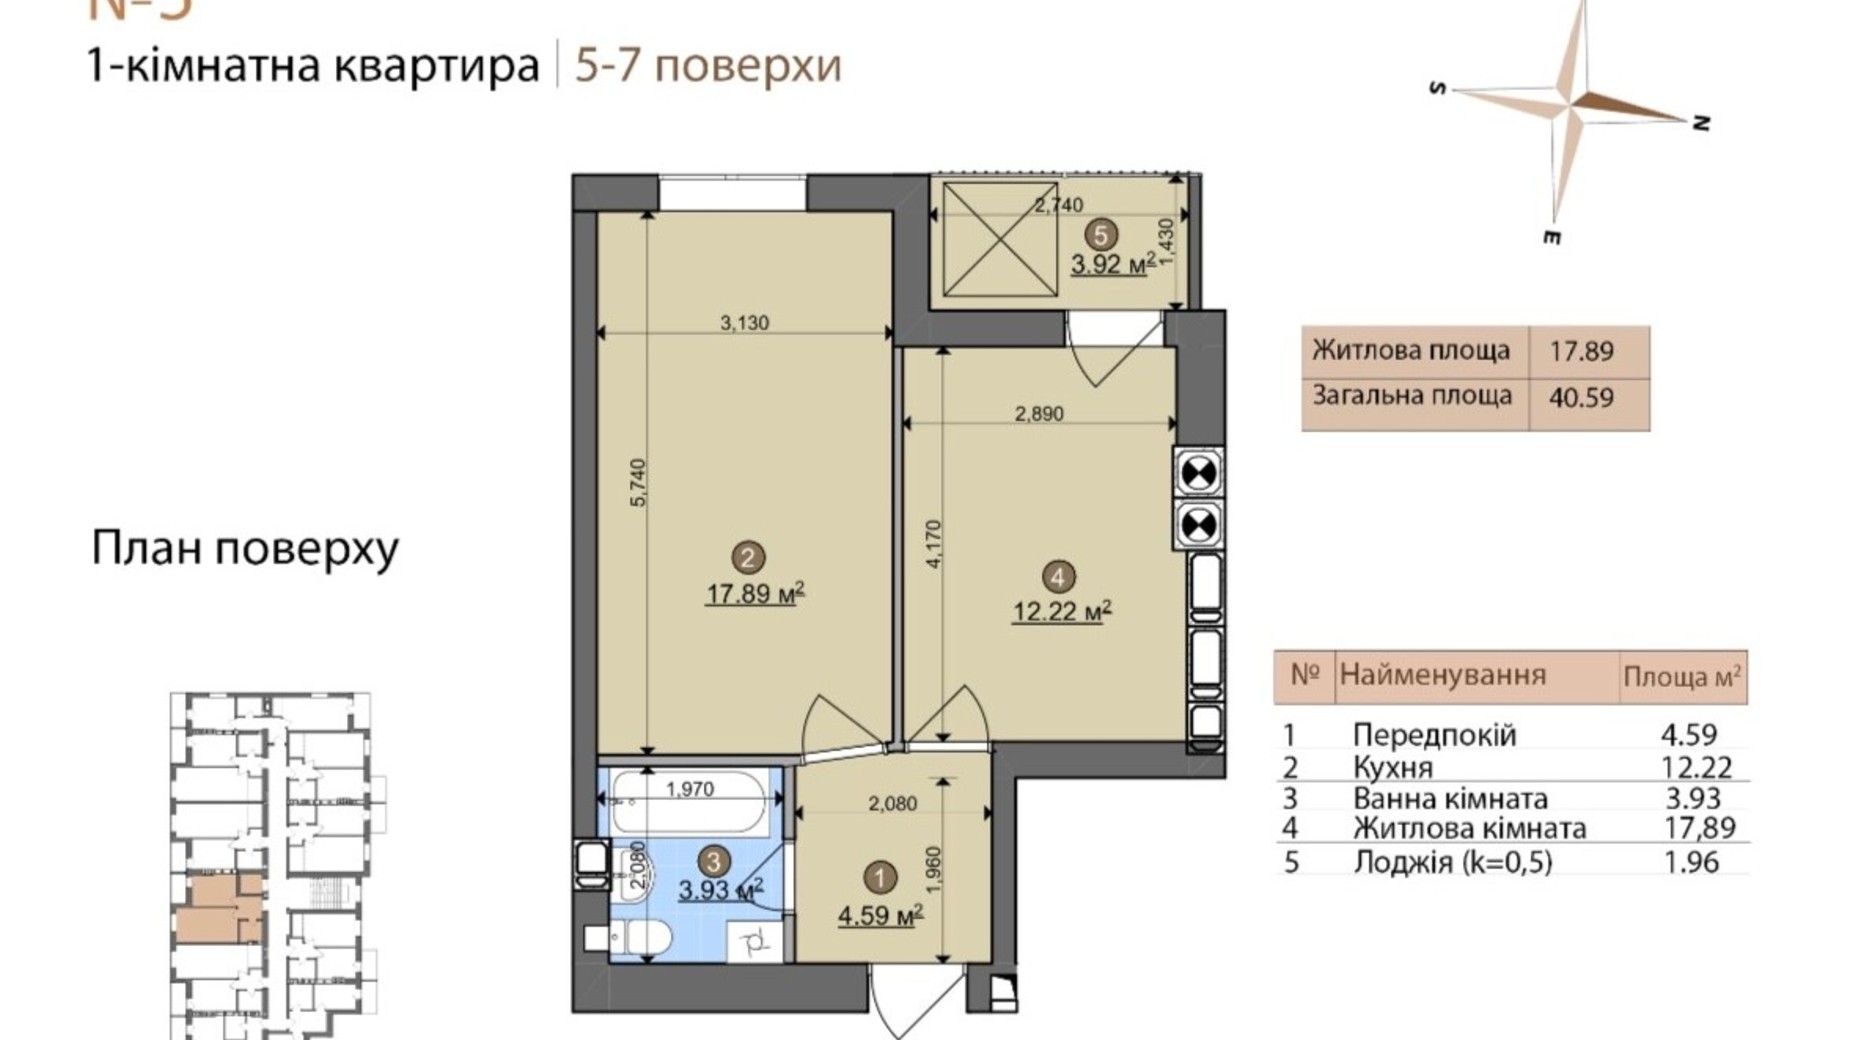 Планировка 1-комнатной квартиры в ЖК Fastiv City 40.59 м², фото 602089